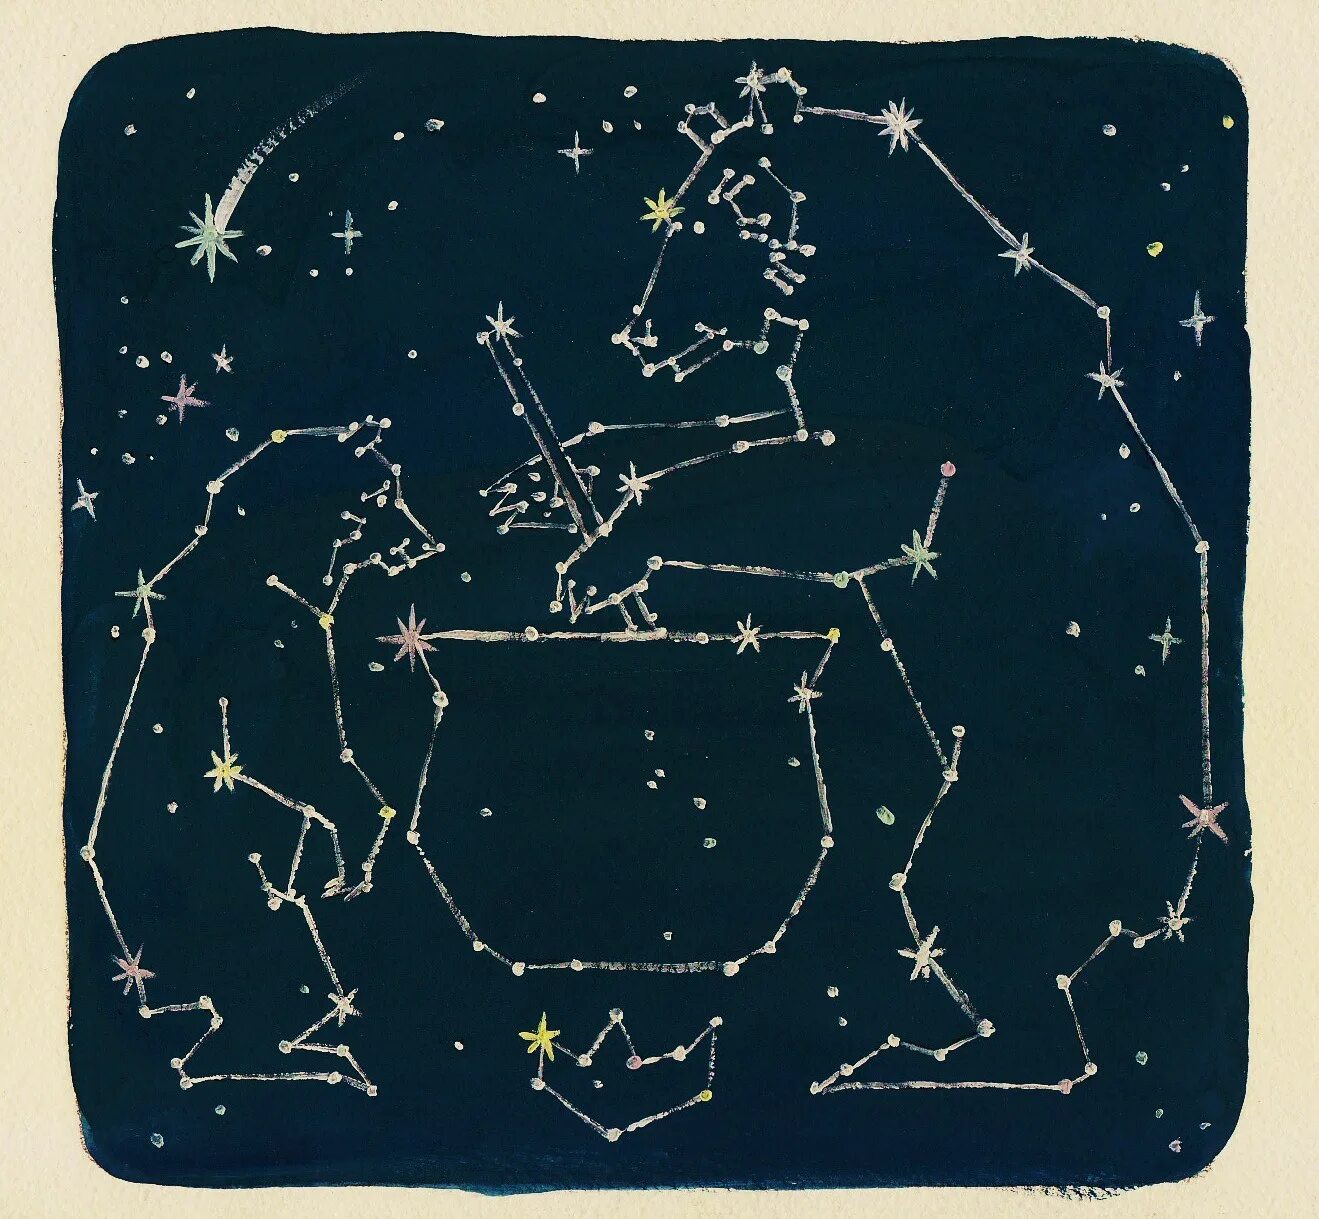 Большая медведица карты. Карта звездного неба ковш большой медведицы. Созвездие большой медведицы на карте звездного неба. Созвездия около малой медведицы. Большая Медведица на атласе звездного неба.